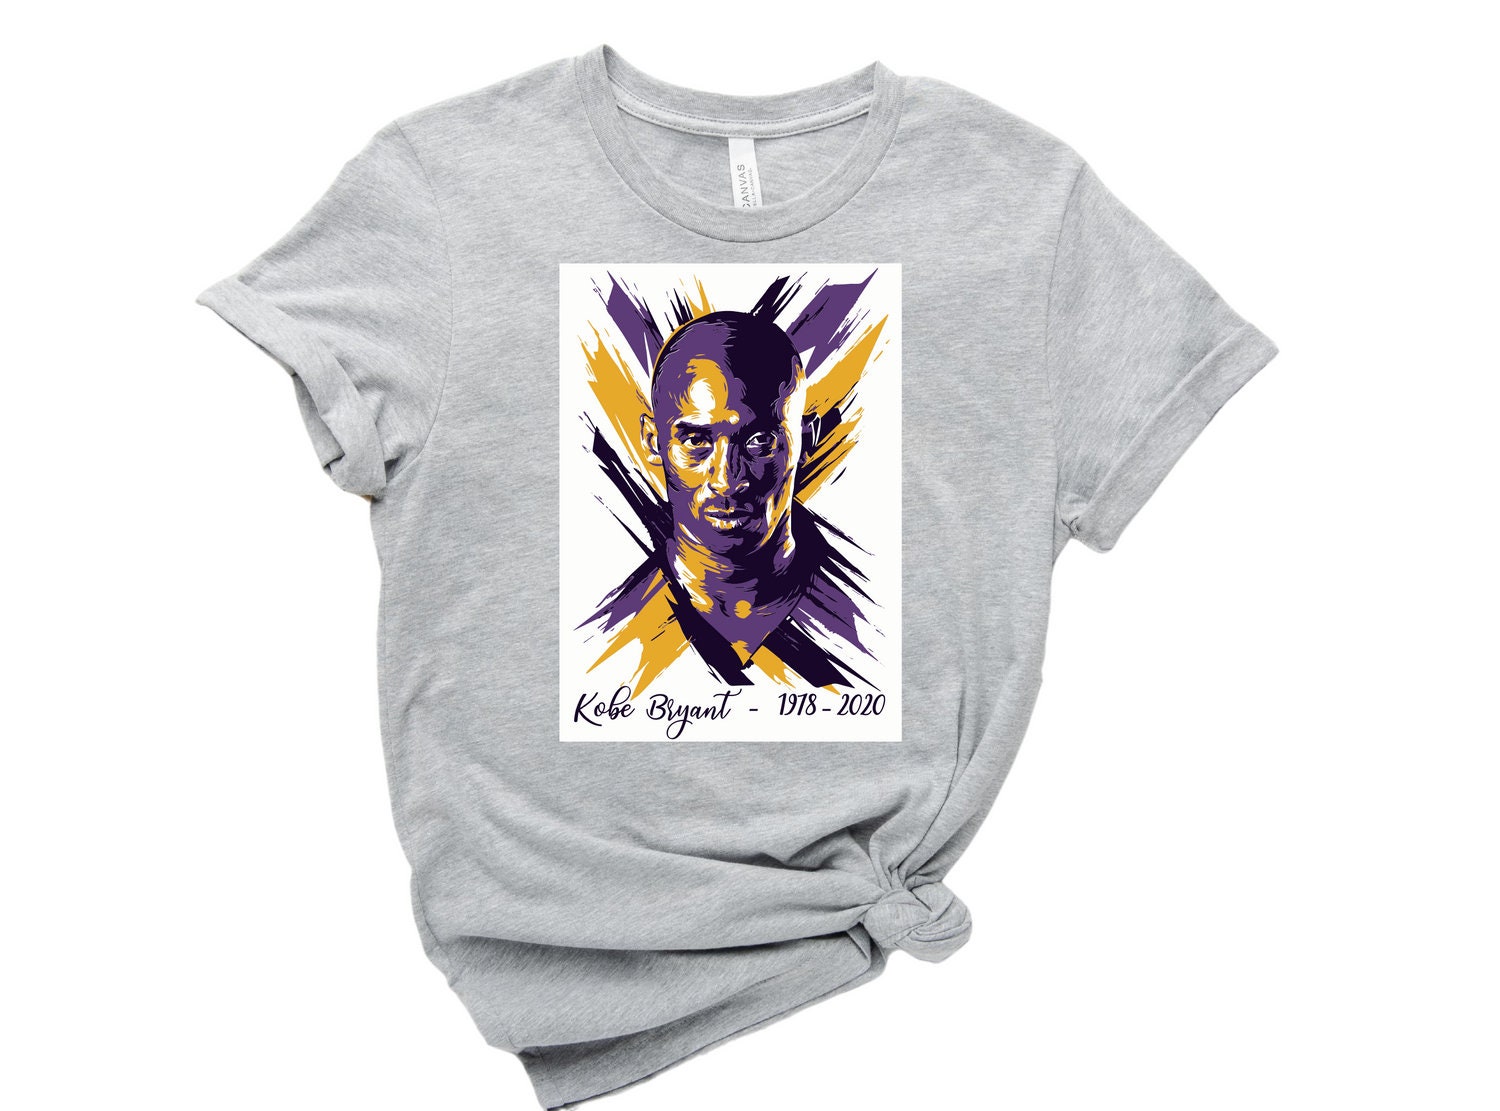 Discover Kobe Bryant Shirt, Sport Shirt, Kobe Bryant Vintage Tee, Basketball Shirt, Kobe Shirt, Legend Kobe Shirt